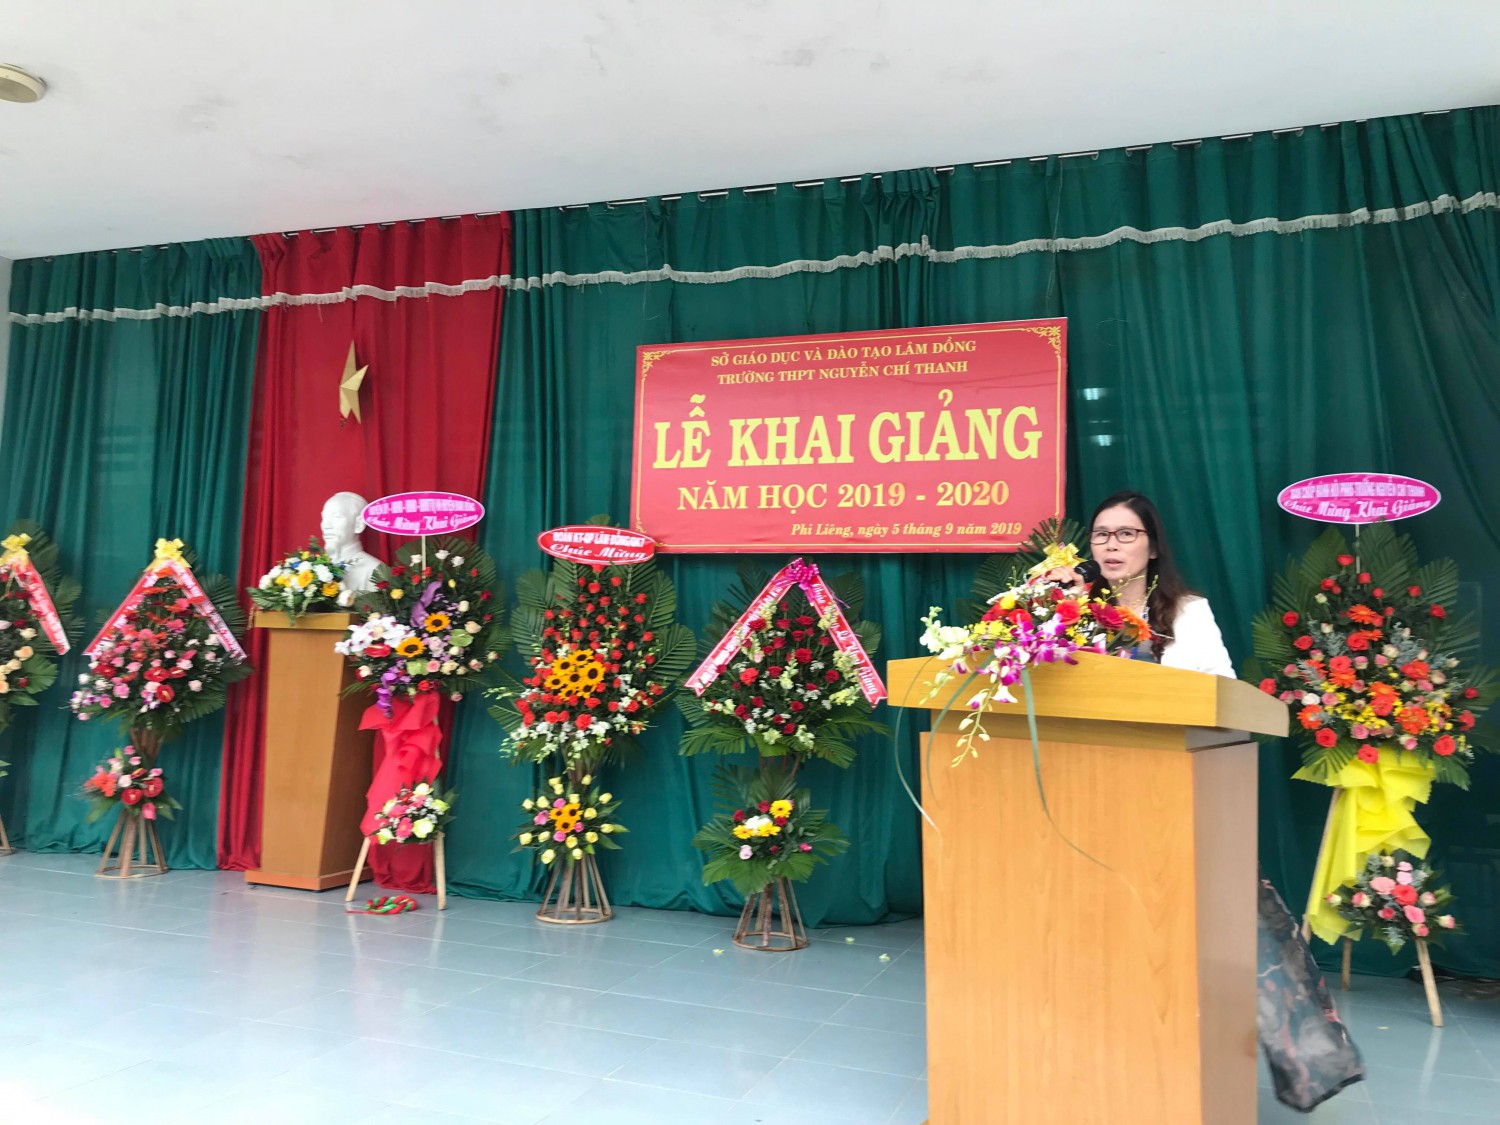 Cô Lê Thị Thu Hằng , Bí thư chi bộ, hiệu trưởng nhà trường - Báo cáo thành tích trong năm học 2018 - 2019